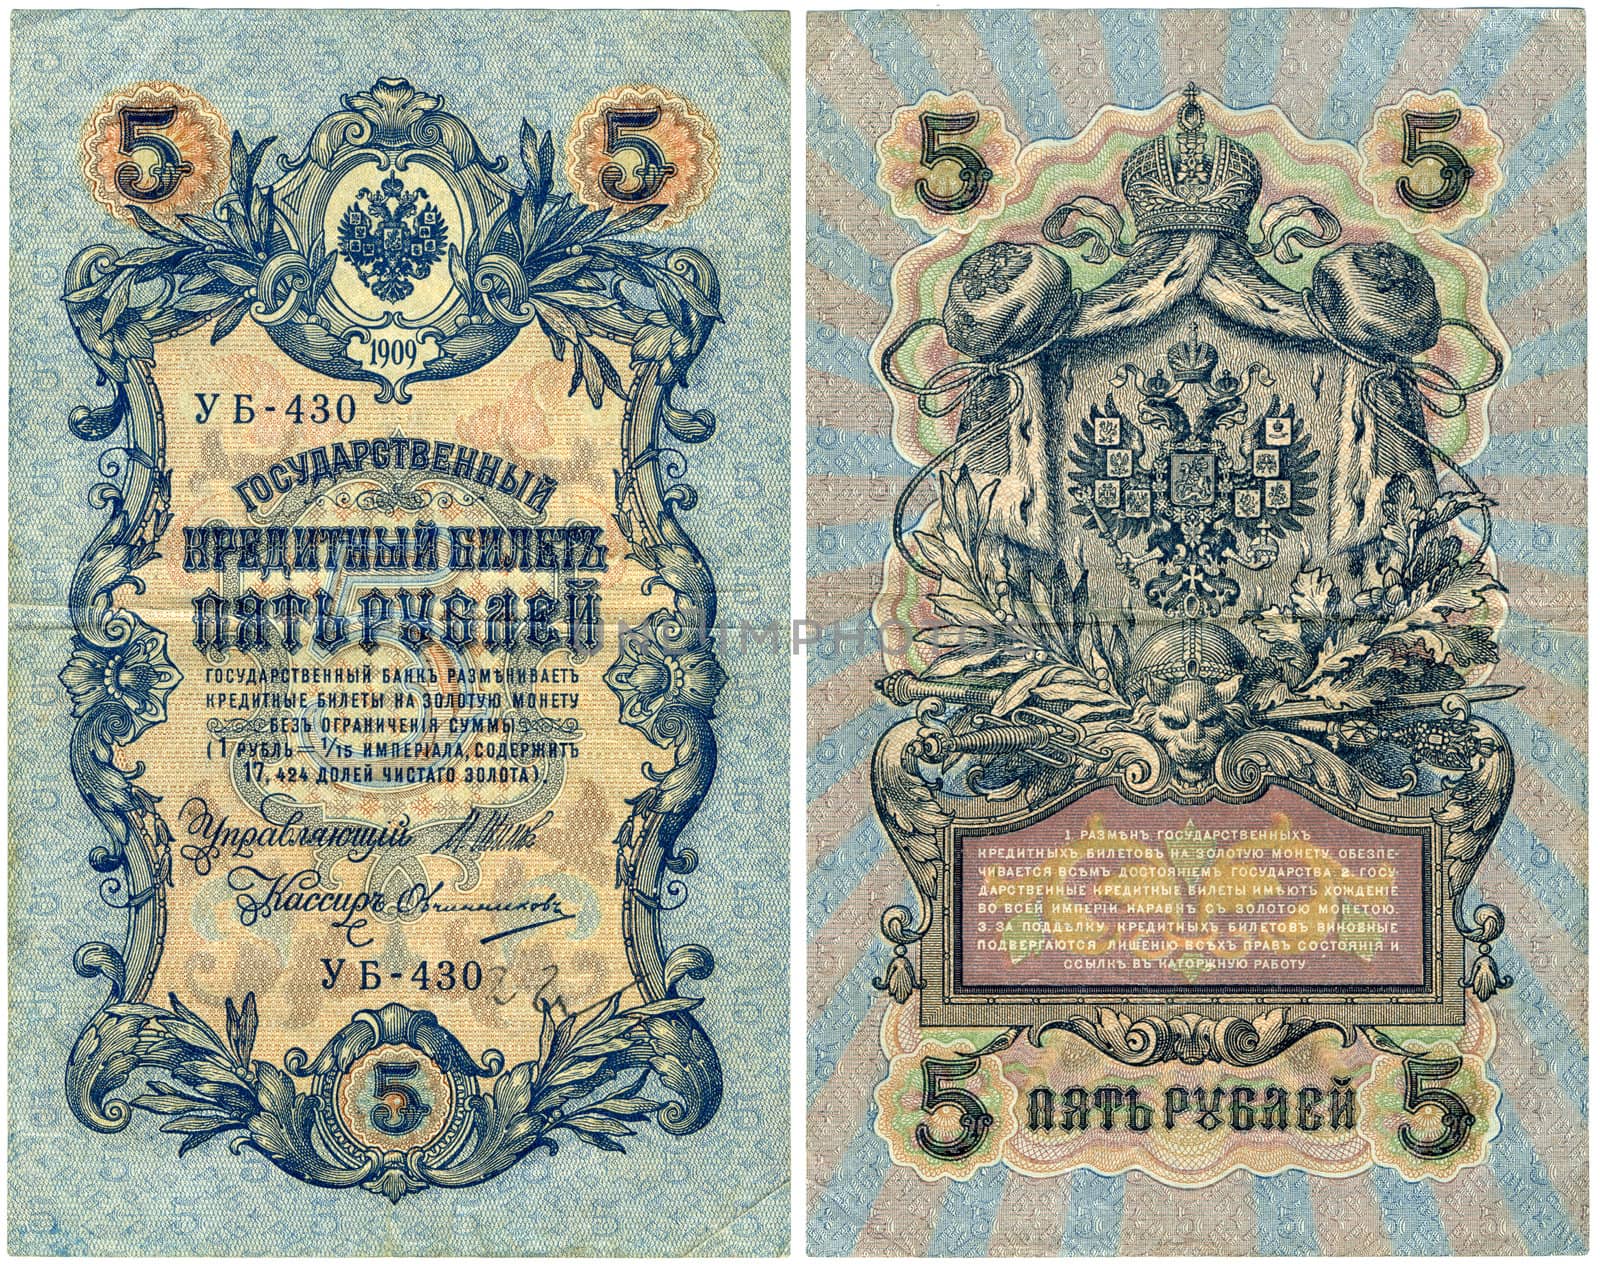 5 Rubles Russia 1909  by Nemo1024